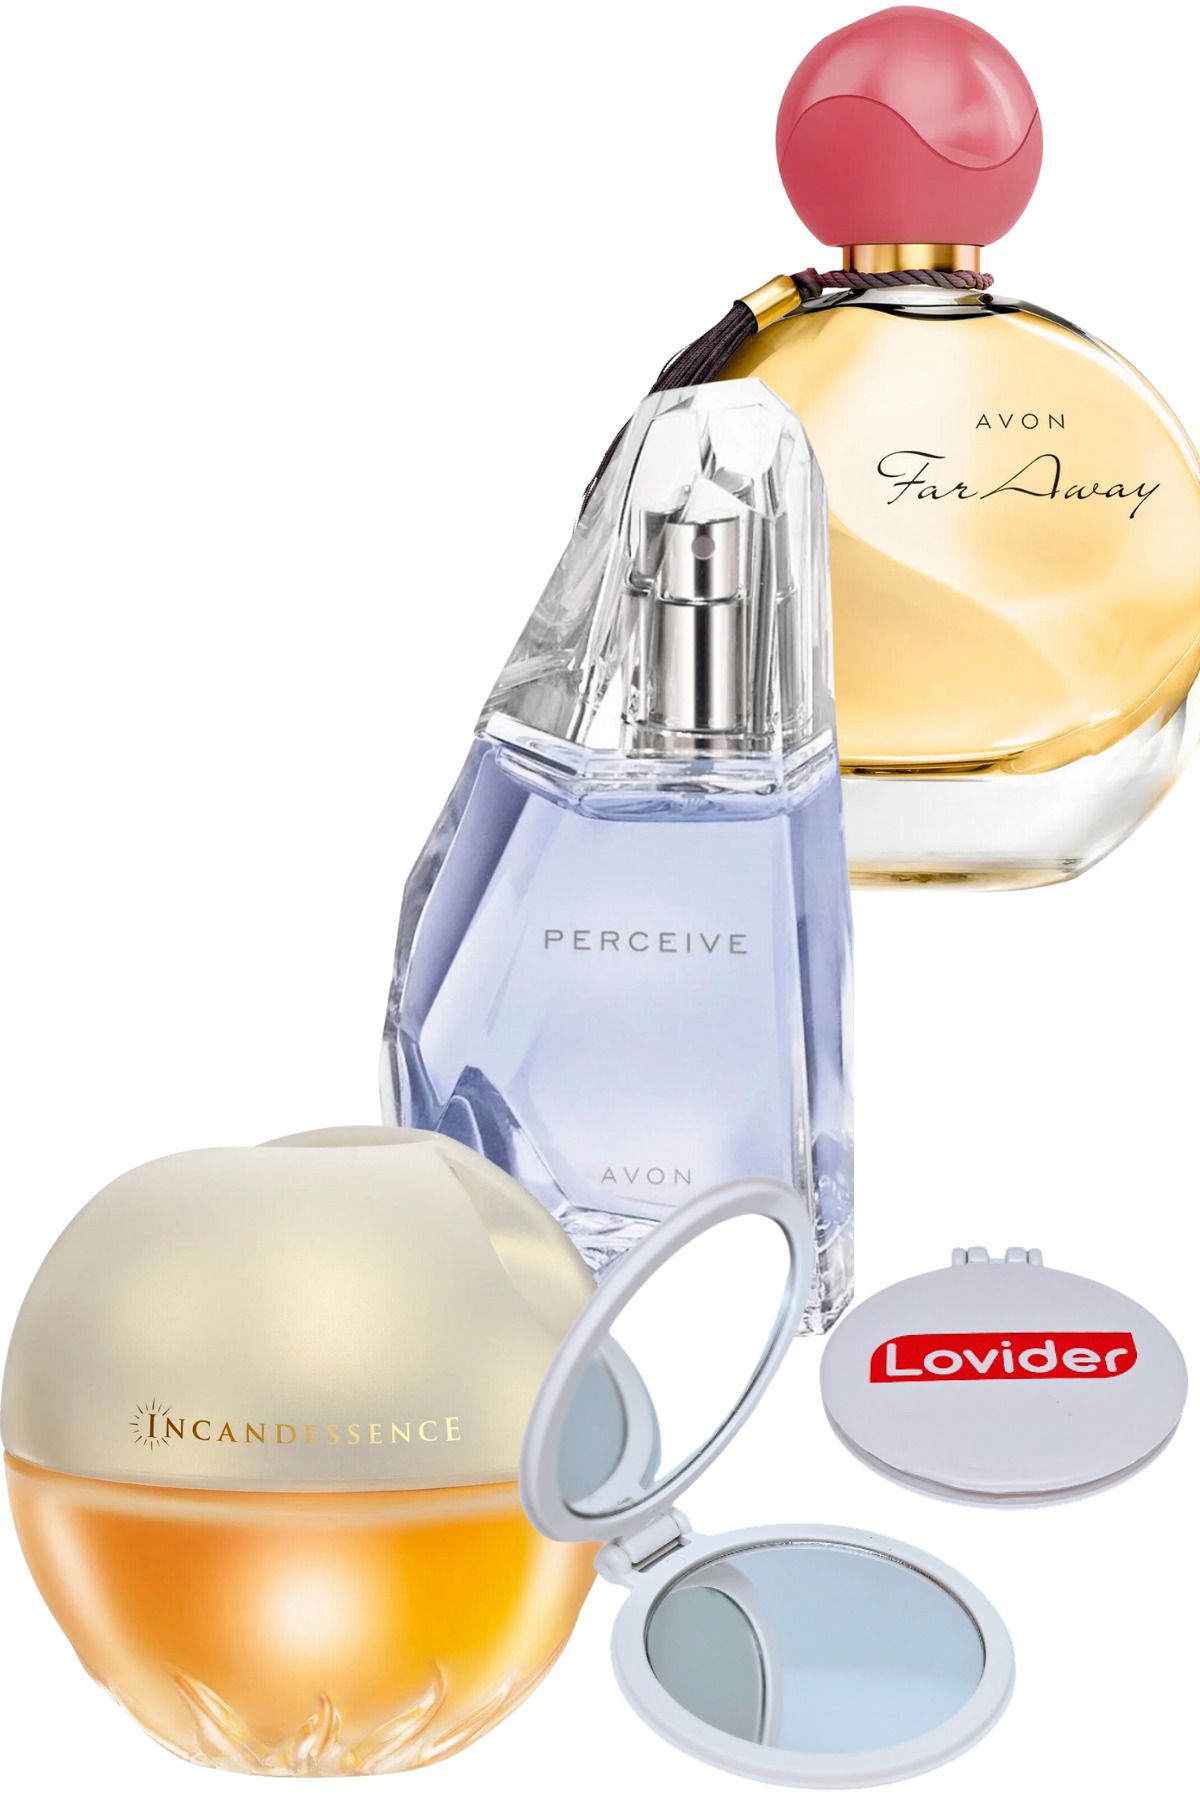 Avon Incandessence + Perceive + Far Away Kadın Parfüm + Lovider Cep Aynası Hediye